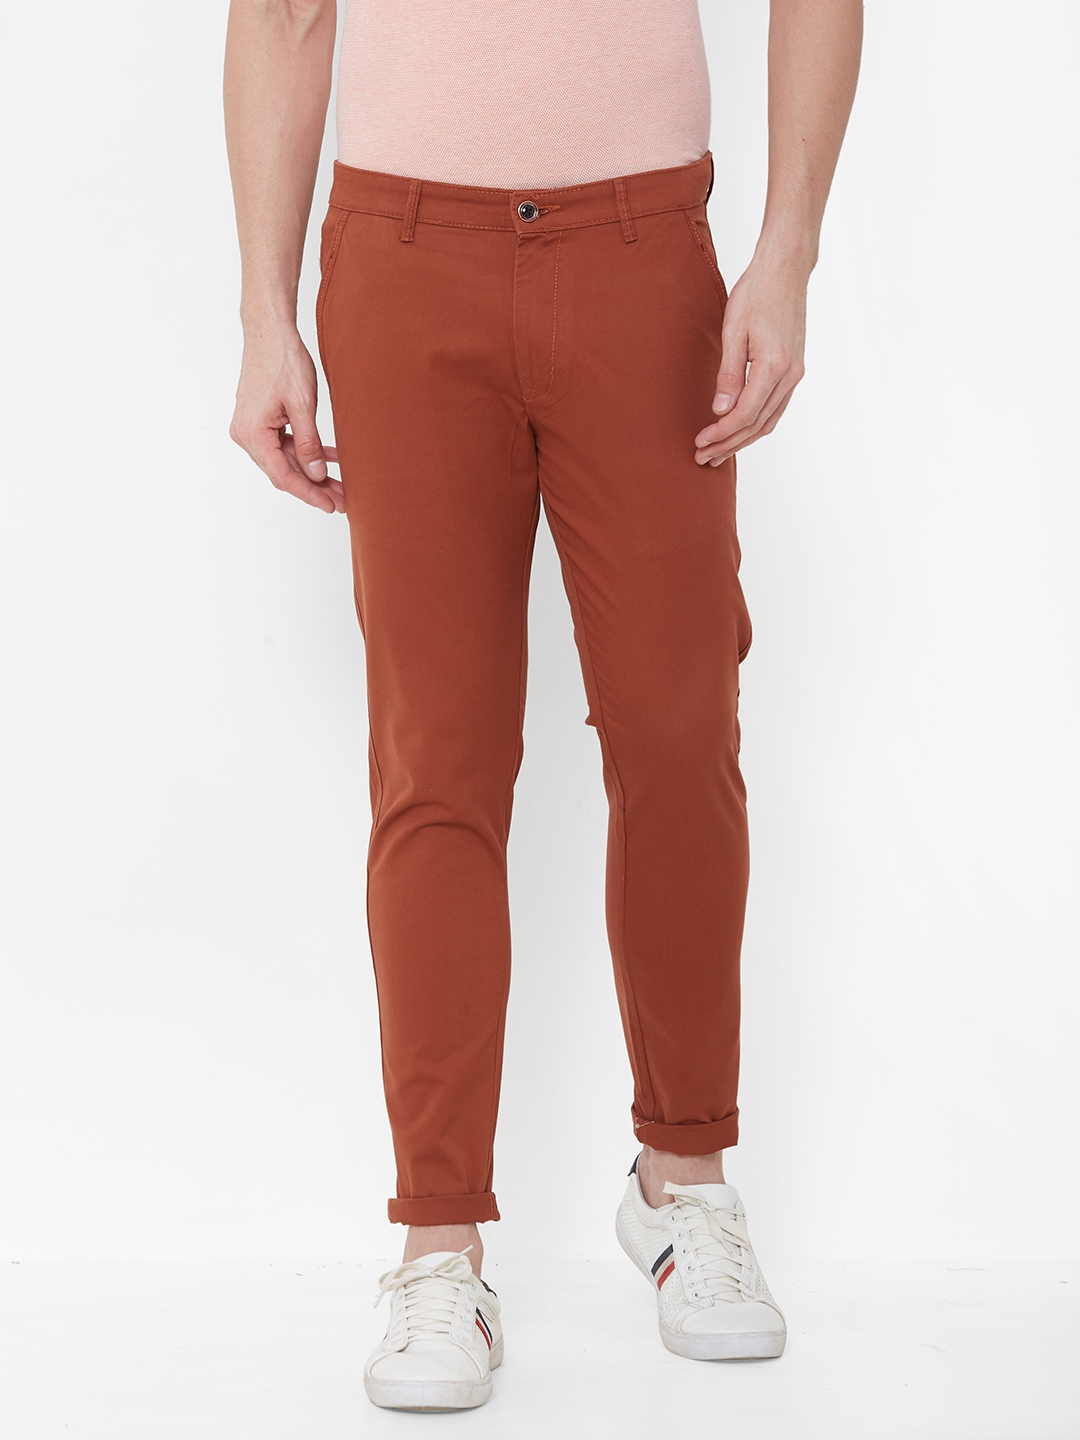 Livewire | Livewire Men's Cotton Lycra Rust Slim Fit Solid Trouser